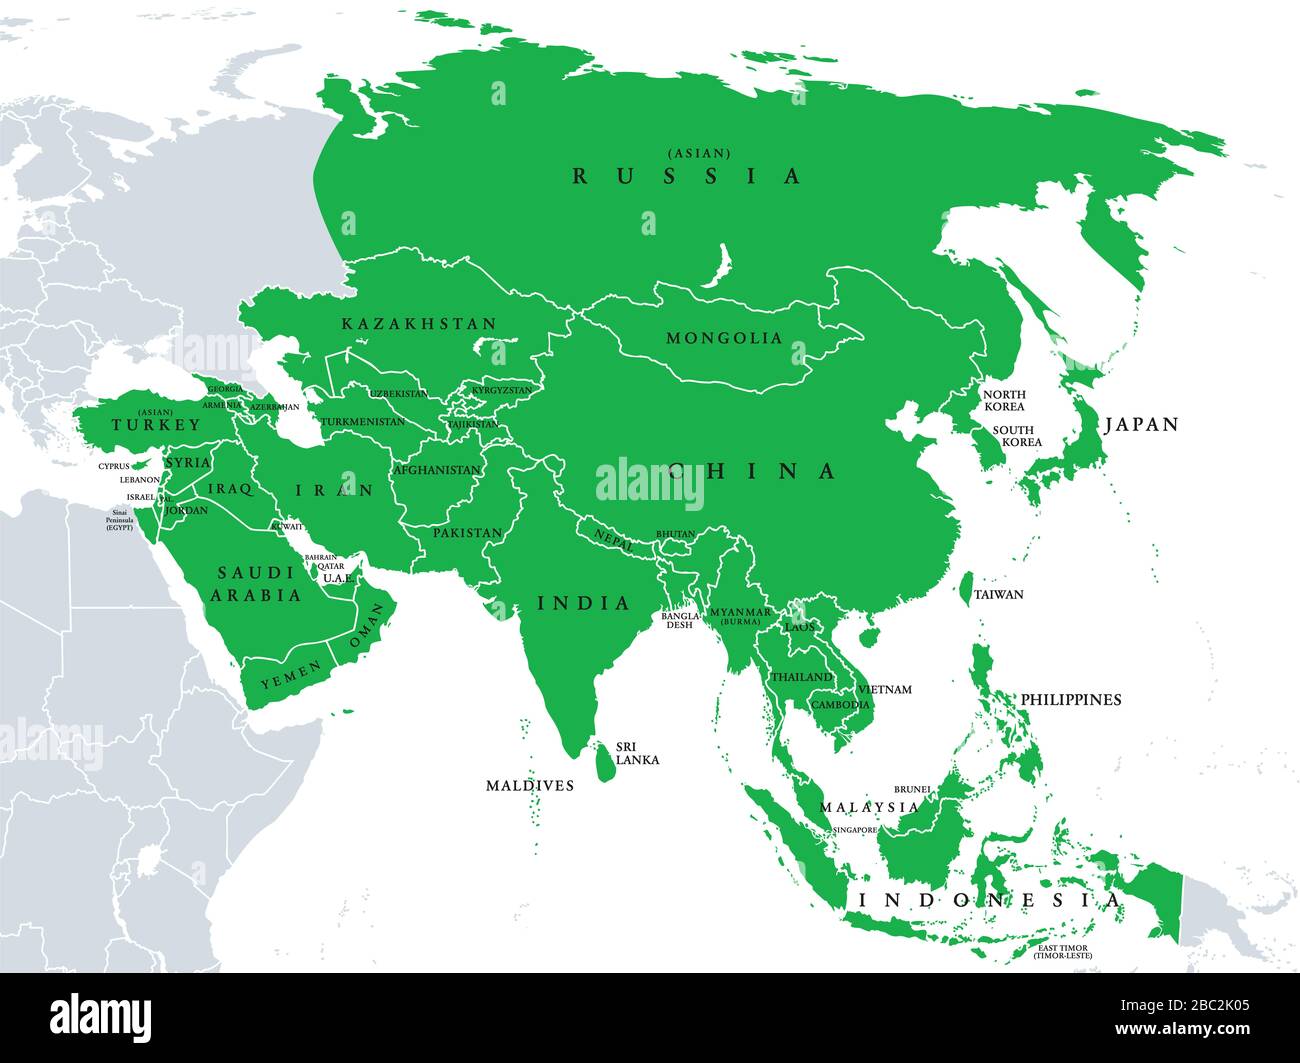 Asien, politische Karte, Staaten und Länder des größten Kontinents. Mit dem asiatischen Teil Russlands und der Türkei sowie der Sinai-Halbinsel als afrikanischer Teil. Stockfoto